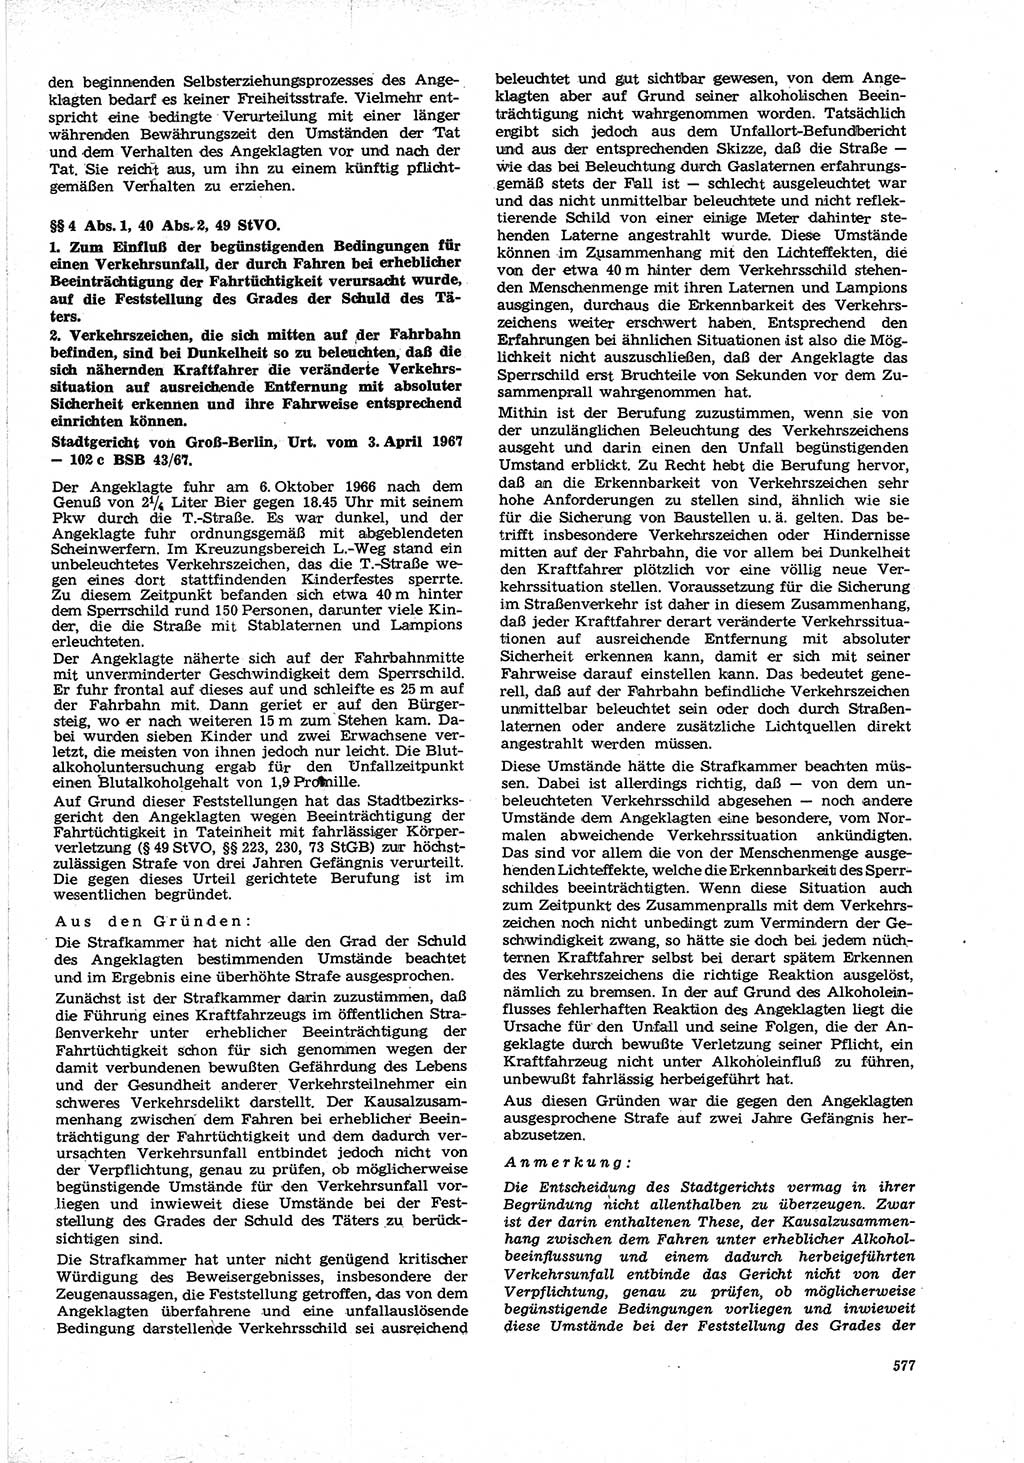 Neue Justiz (NJ), Zeitschrift für Recht und Rechtswissenschaft [Deutsche Demokratische Republik (DDR)], 21. Jahrgang 1967, Seite 577 (NJ DDR 1967, S. 577)